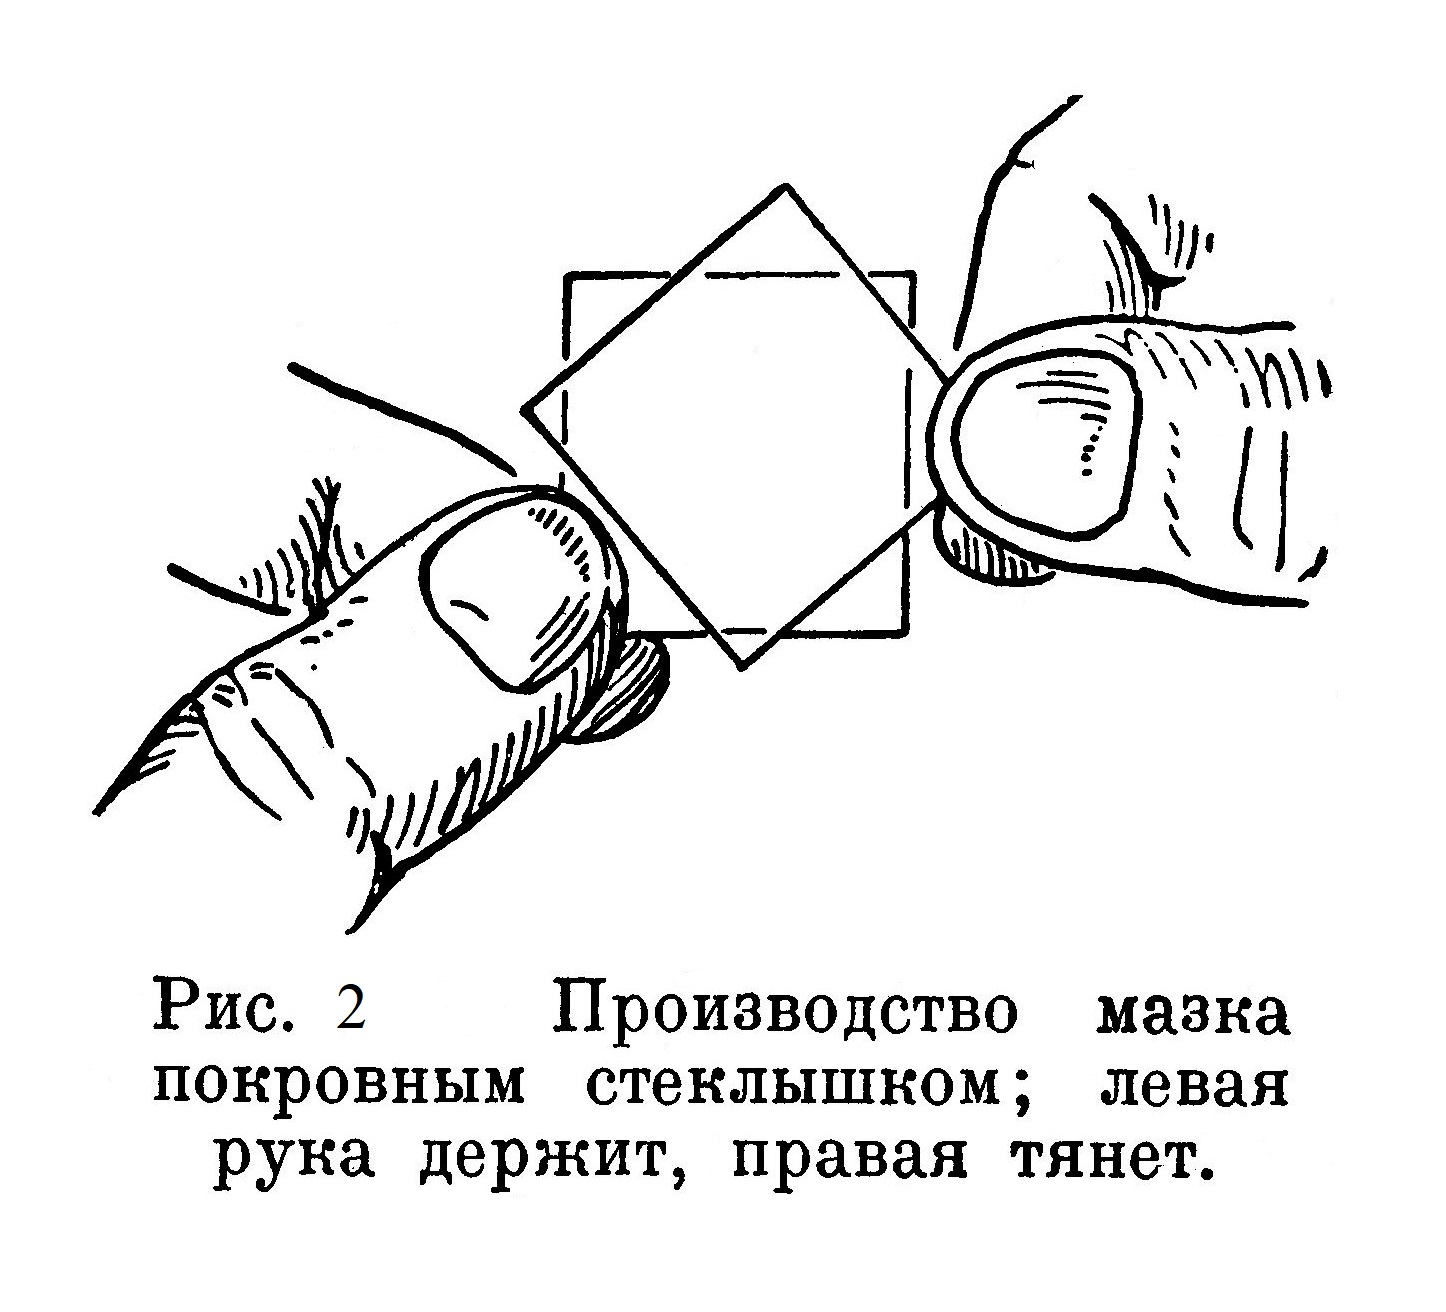 Производство мазка покровным стеклышком; левая рука держит, правая тянет.